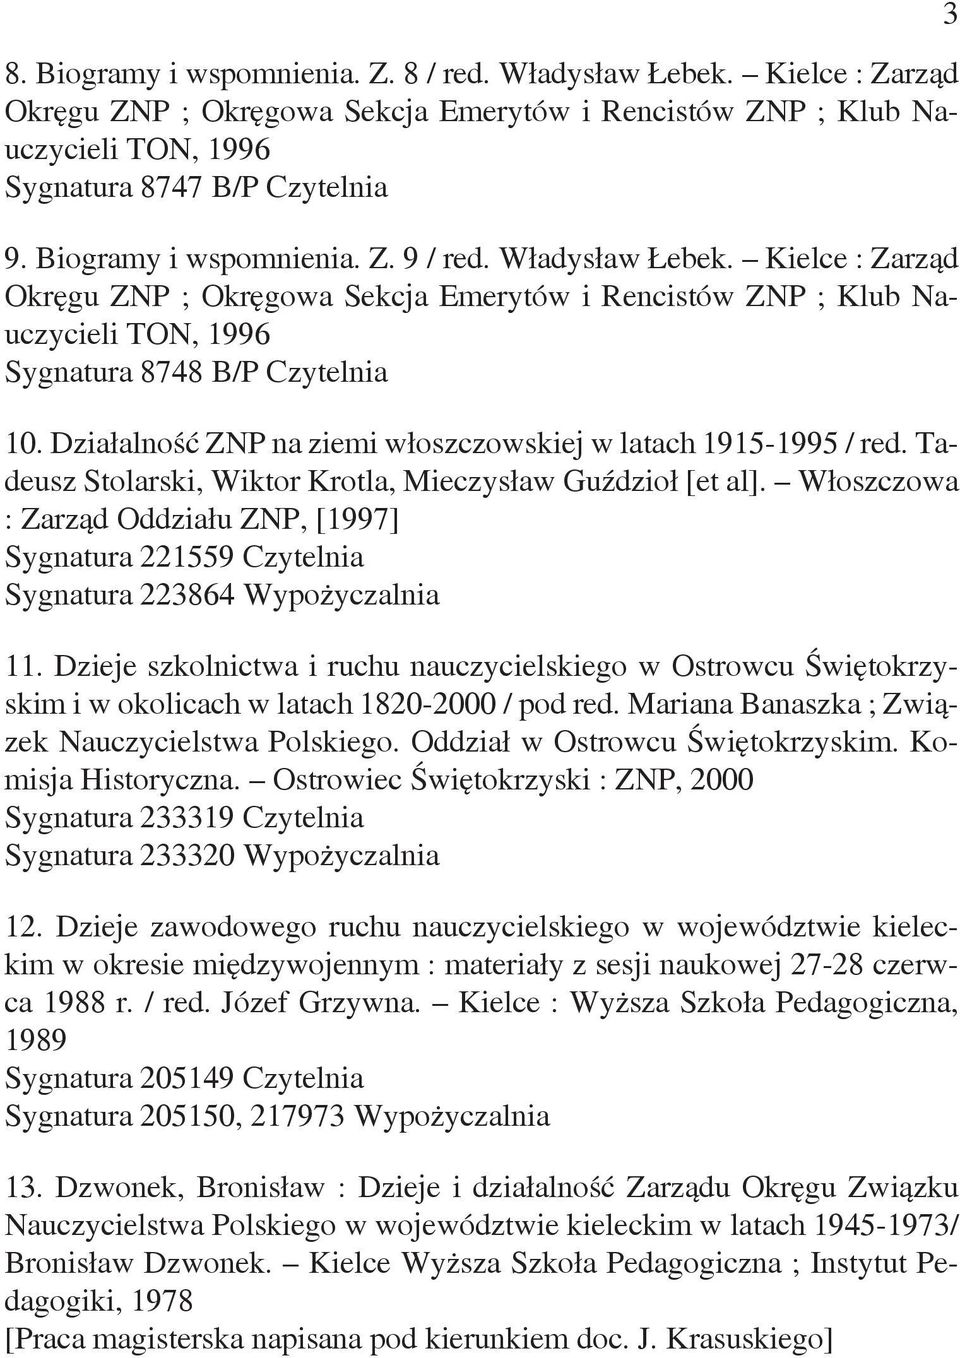 Działalność ZNP na ziemi włoszczowskiej w latach 1915-1995 / red. Tadeusz Stolarski, Wiktor Krotla, Mieczysław Guździoł [et al].